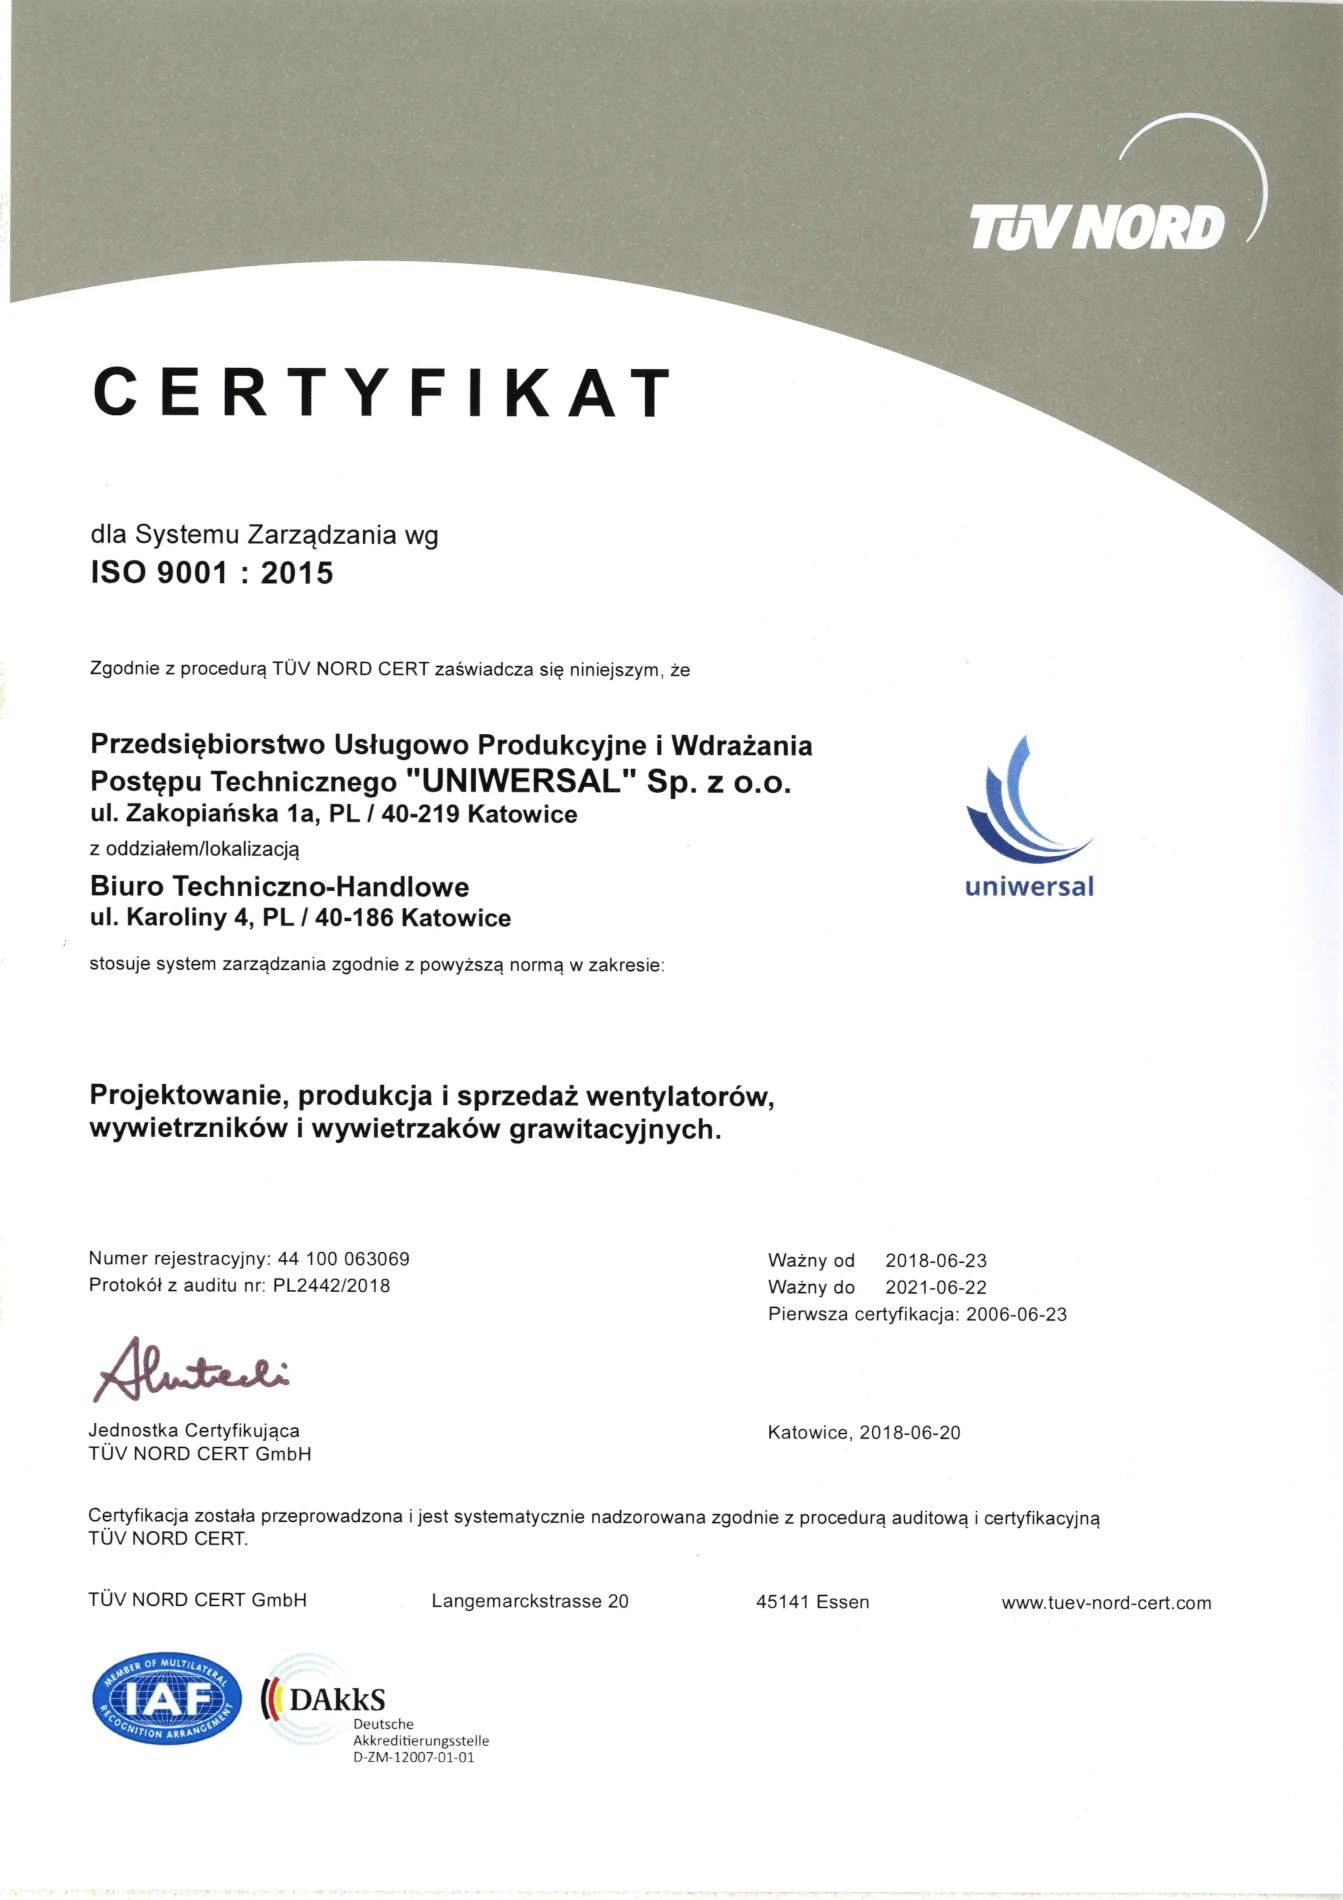 Certyfikat dla Systemu Zarządzania wg ISO 9001 : 2015